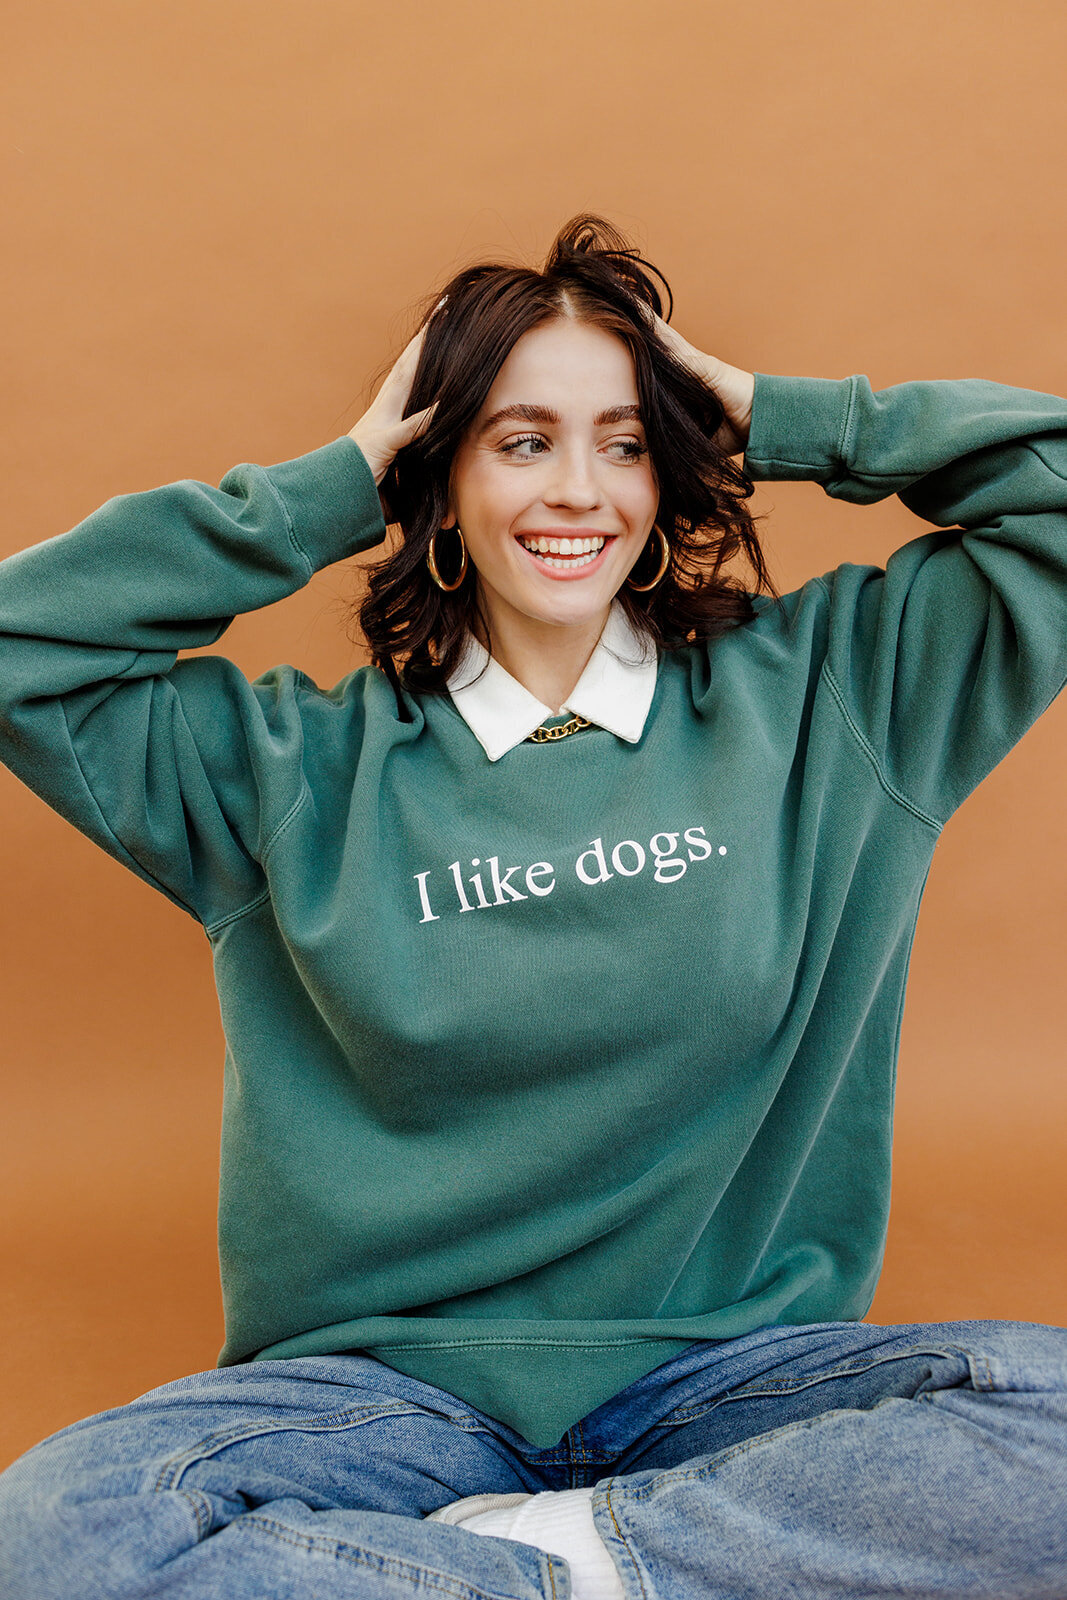 I like dogs shirt